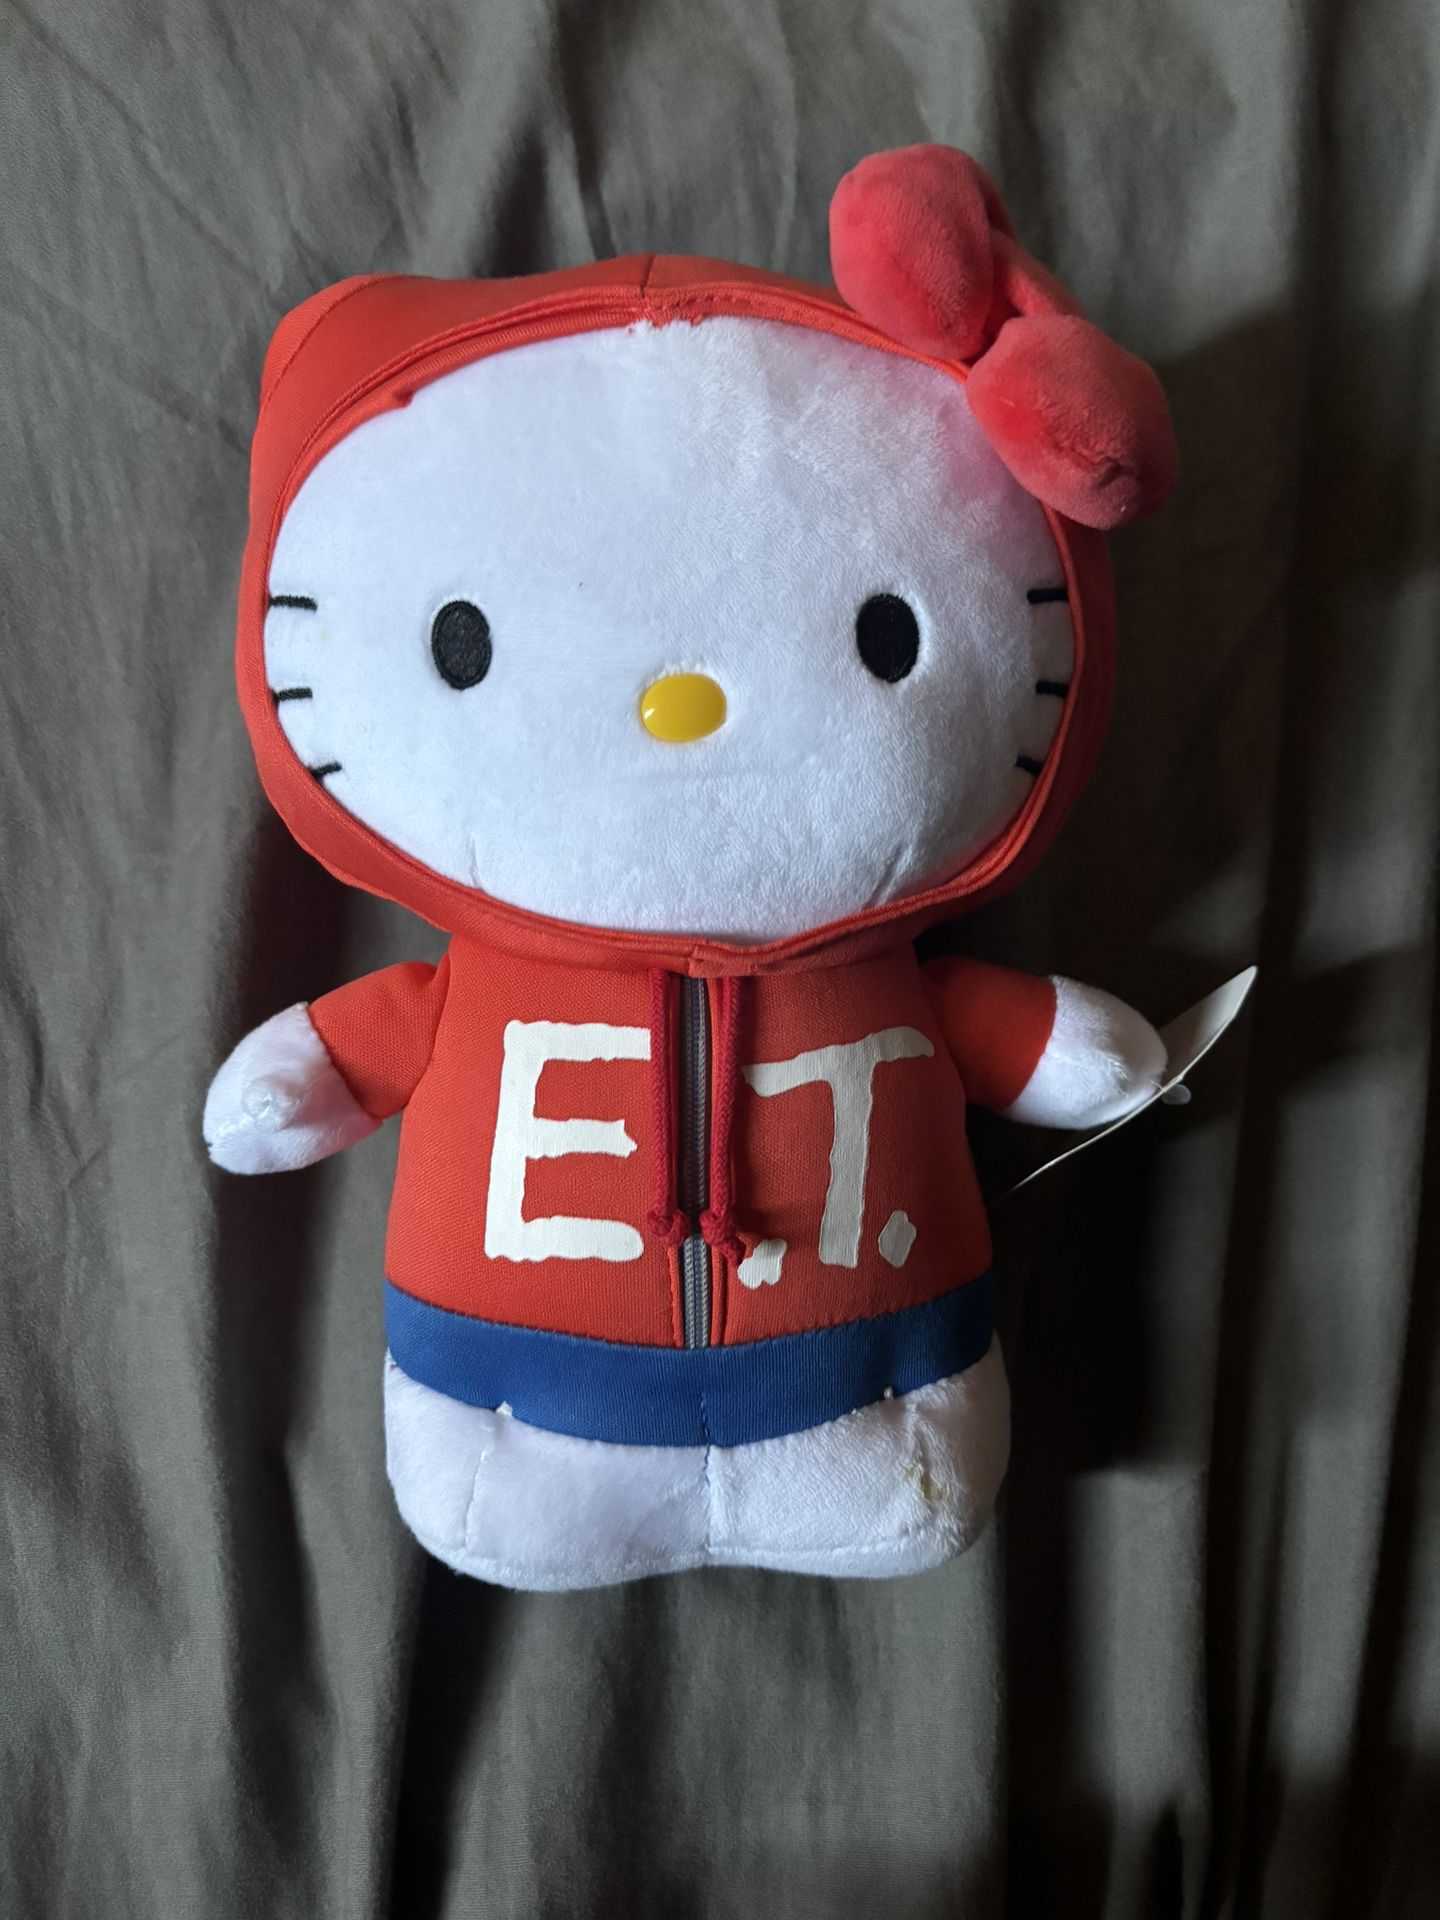 Hello Kitty Plushy Sanrio